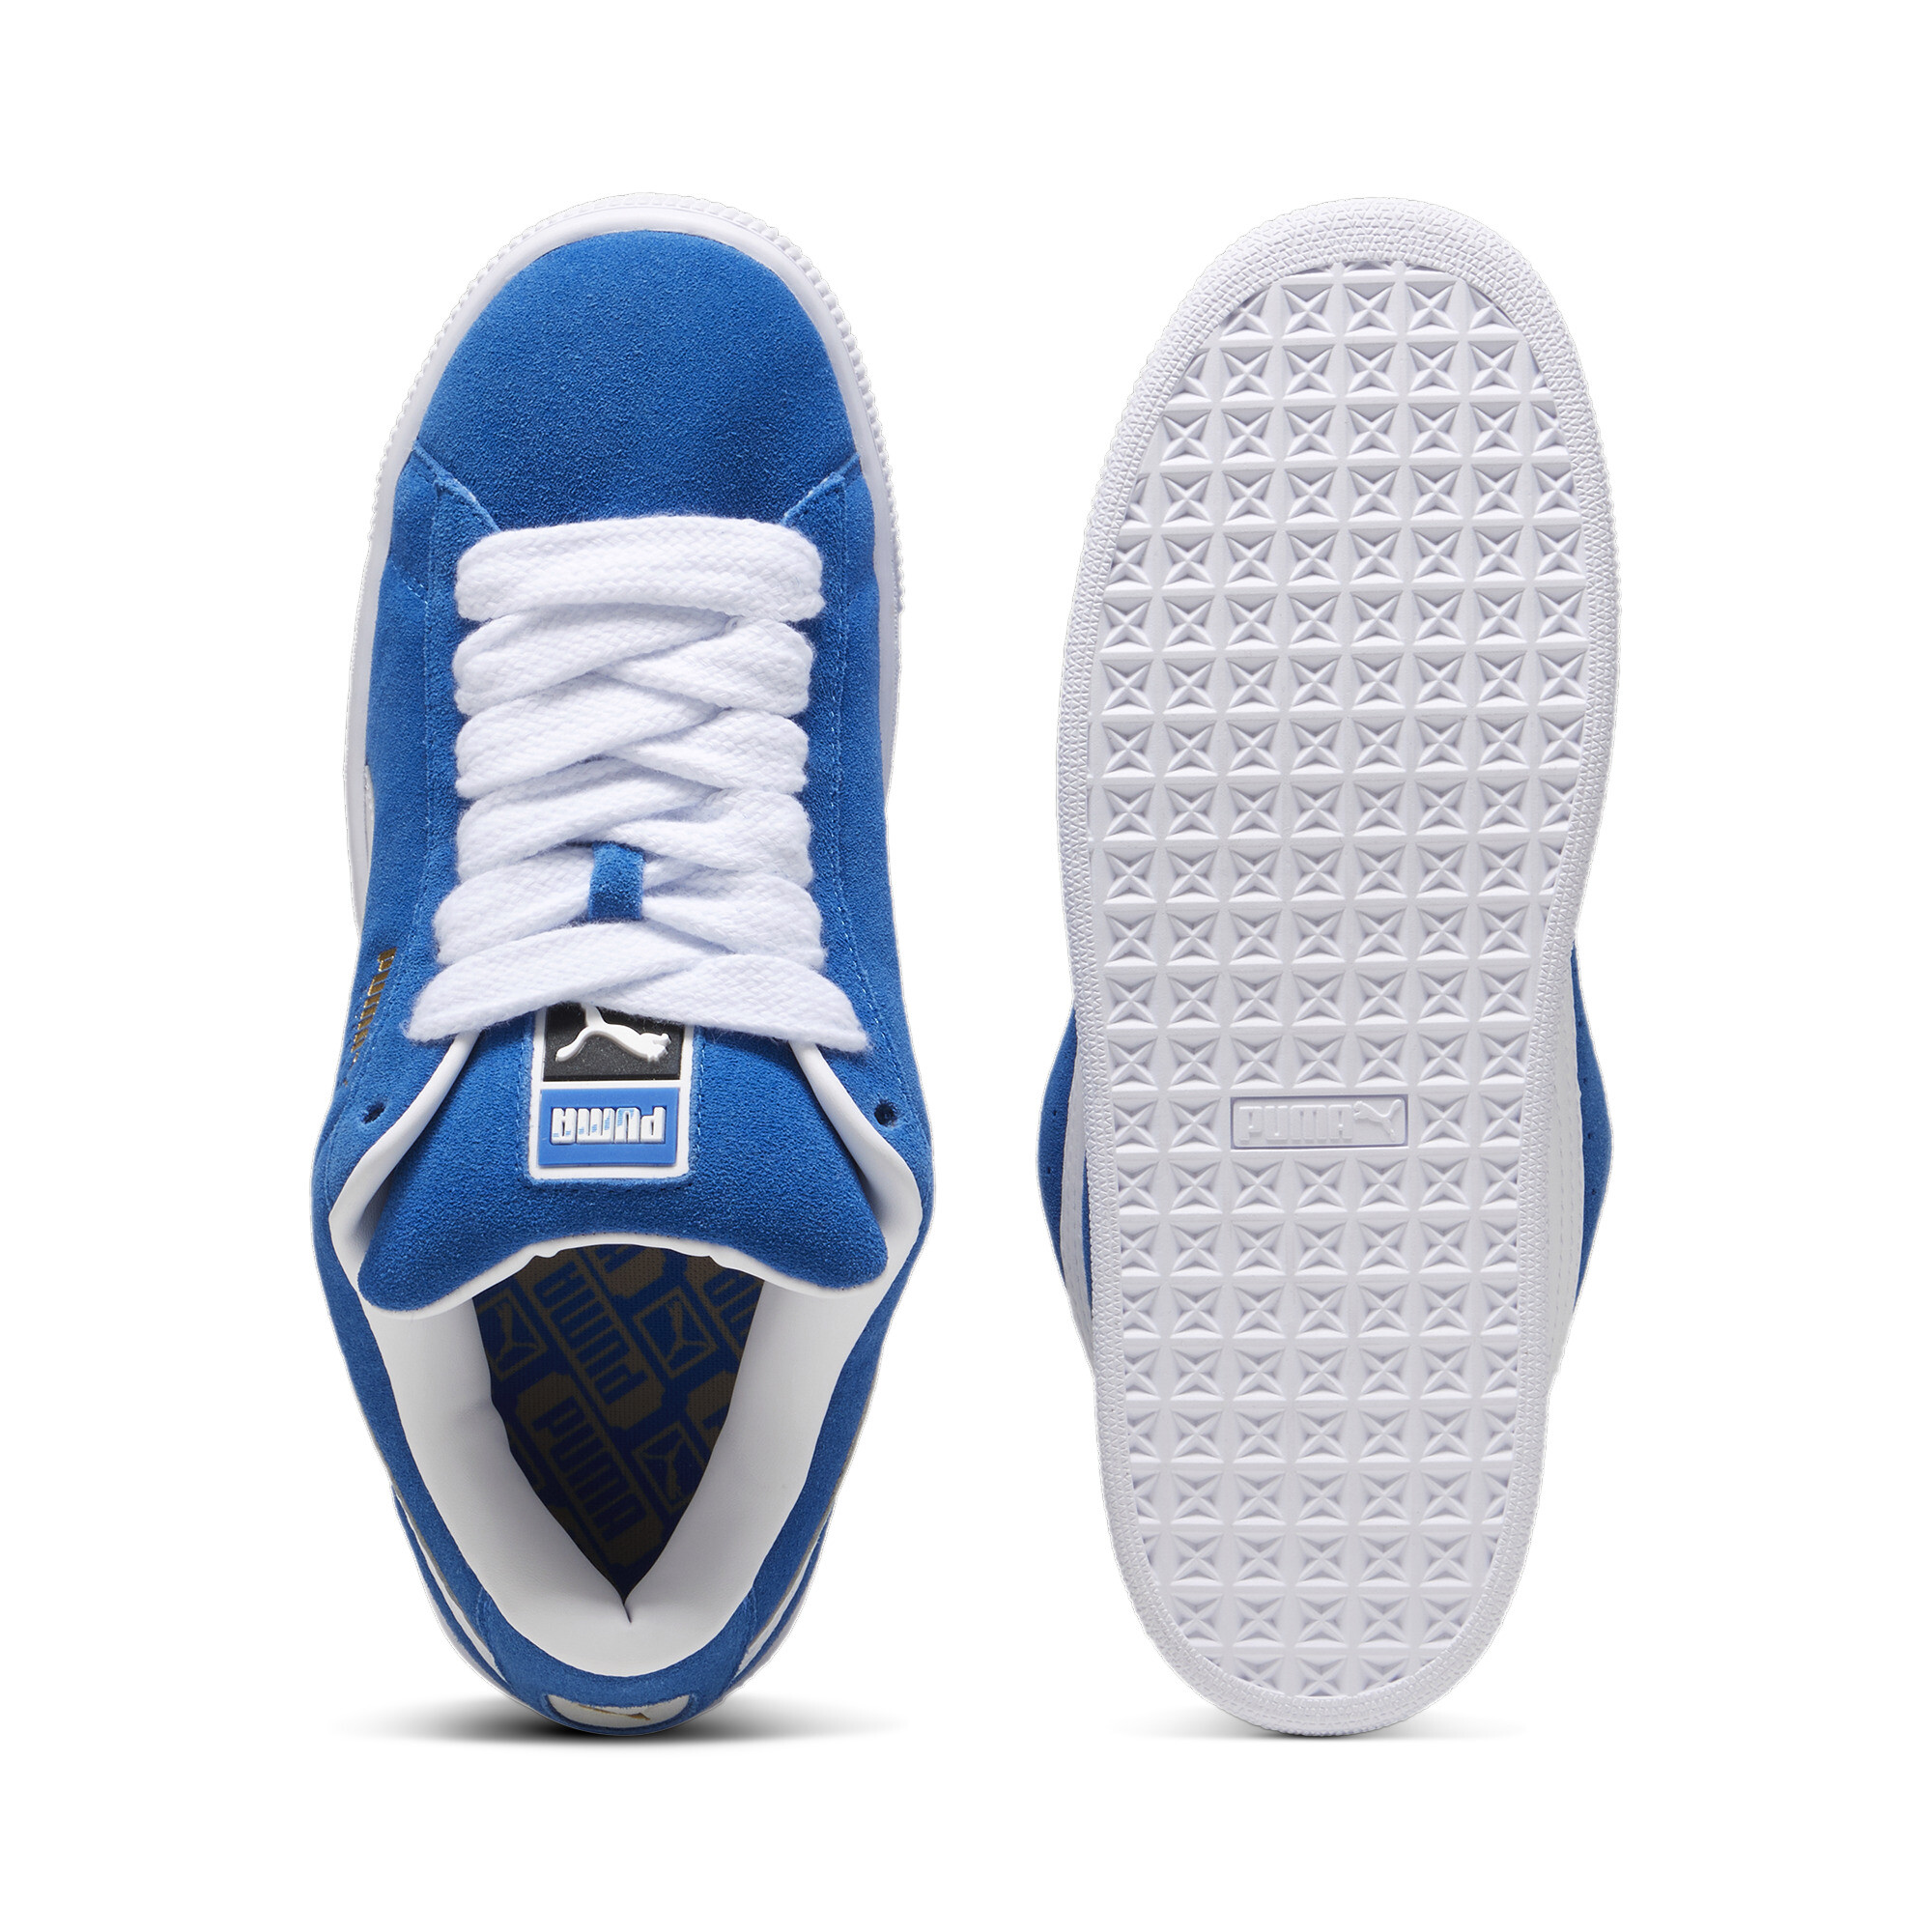 Unisex PUMA Suede XL Sneakers In Blue, Size EU 46